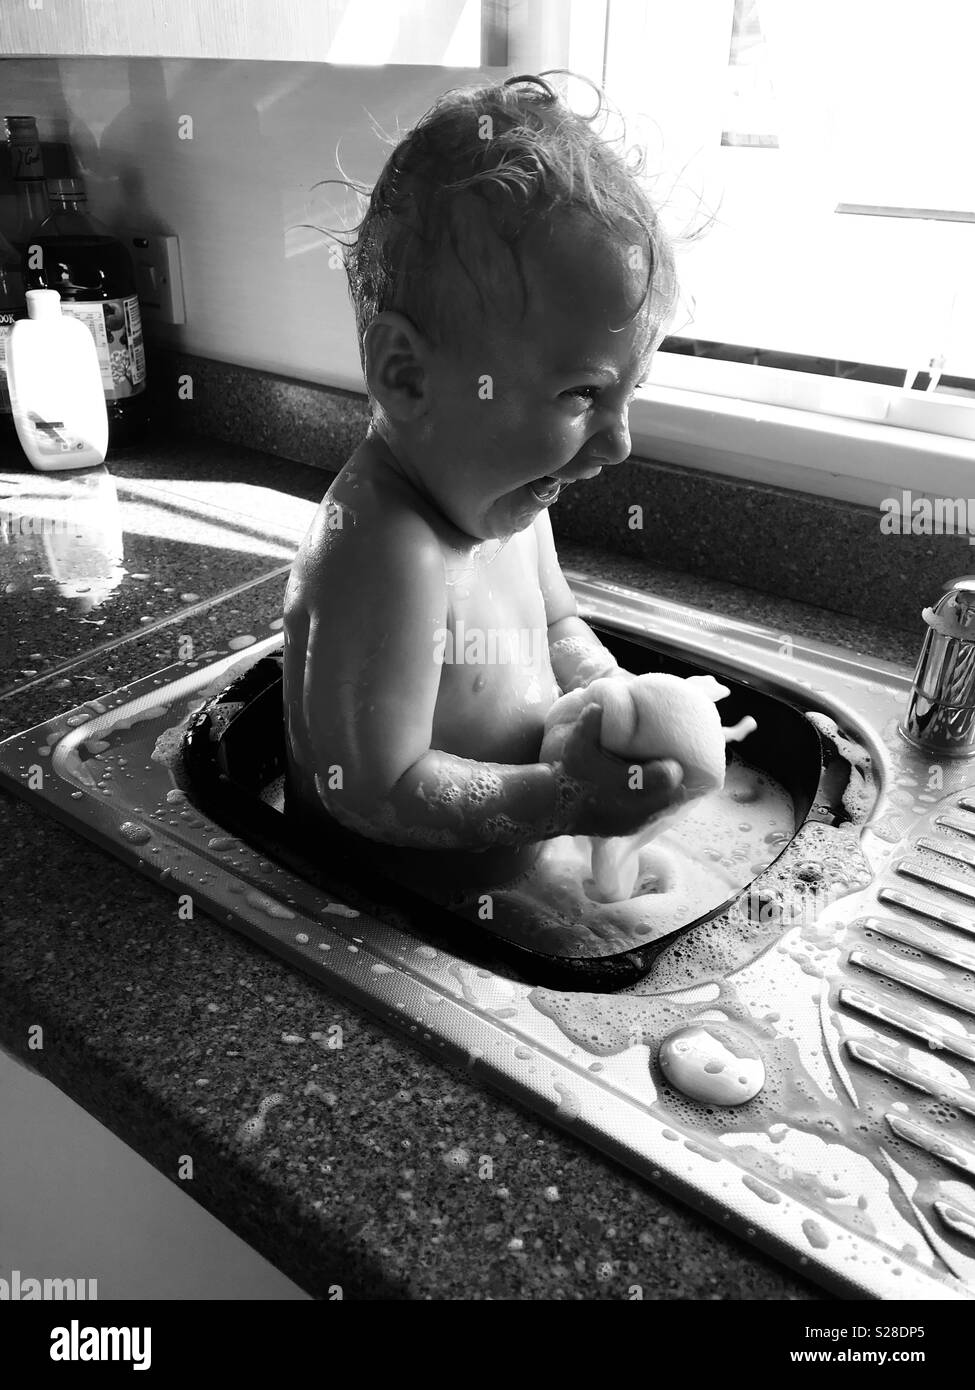 Baby Boy having bath dans un évier de cuisine Banque D'Images